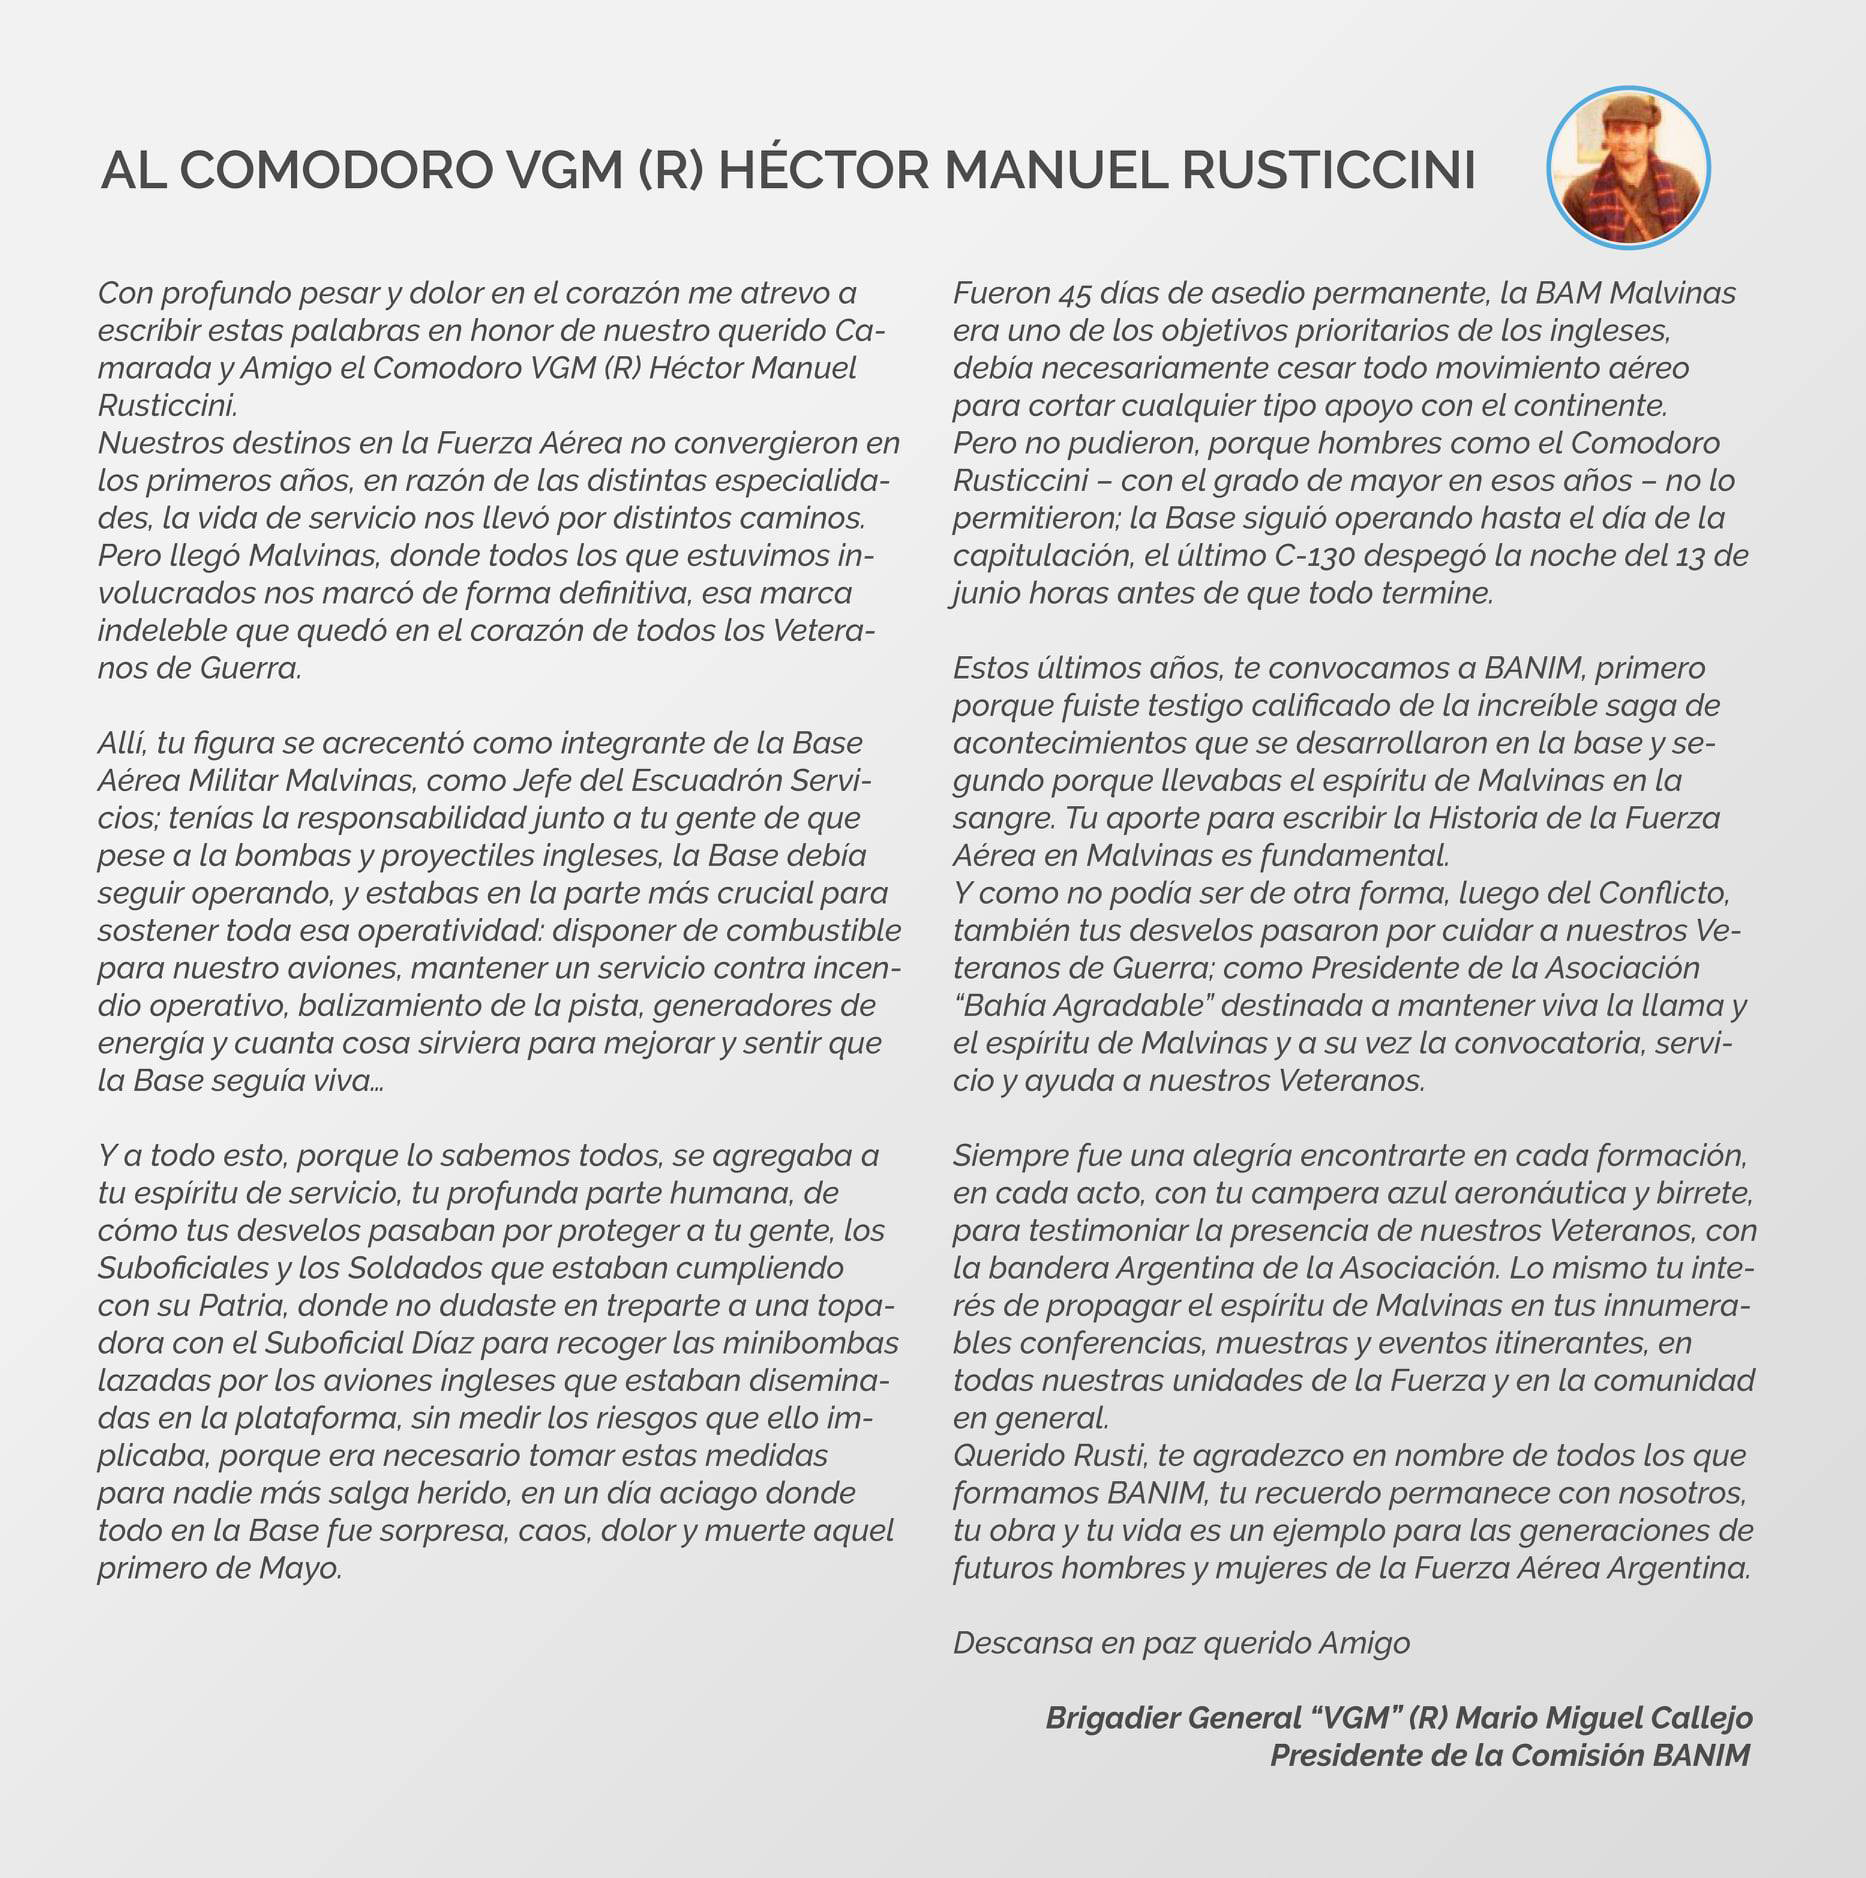 Carta del brigadier general "VGM" (R) Mario Miguel Callejo al comodoro "VGM" (R) Héctor Rusticcini